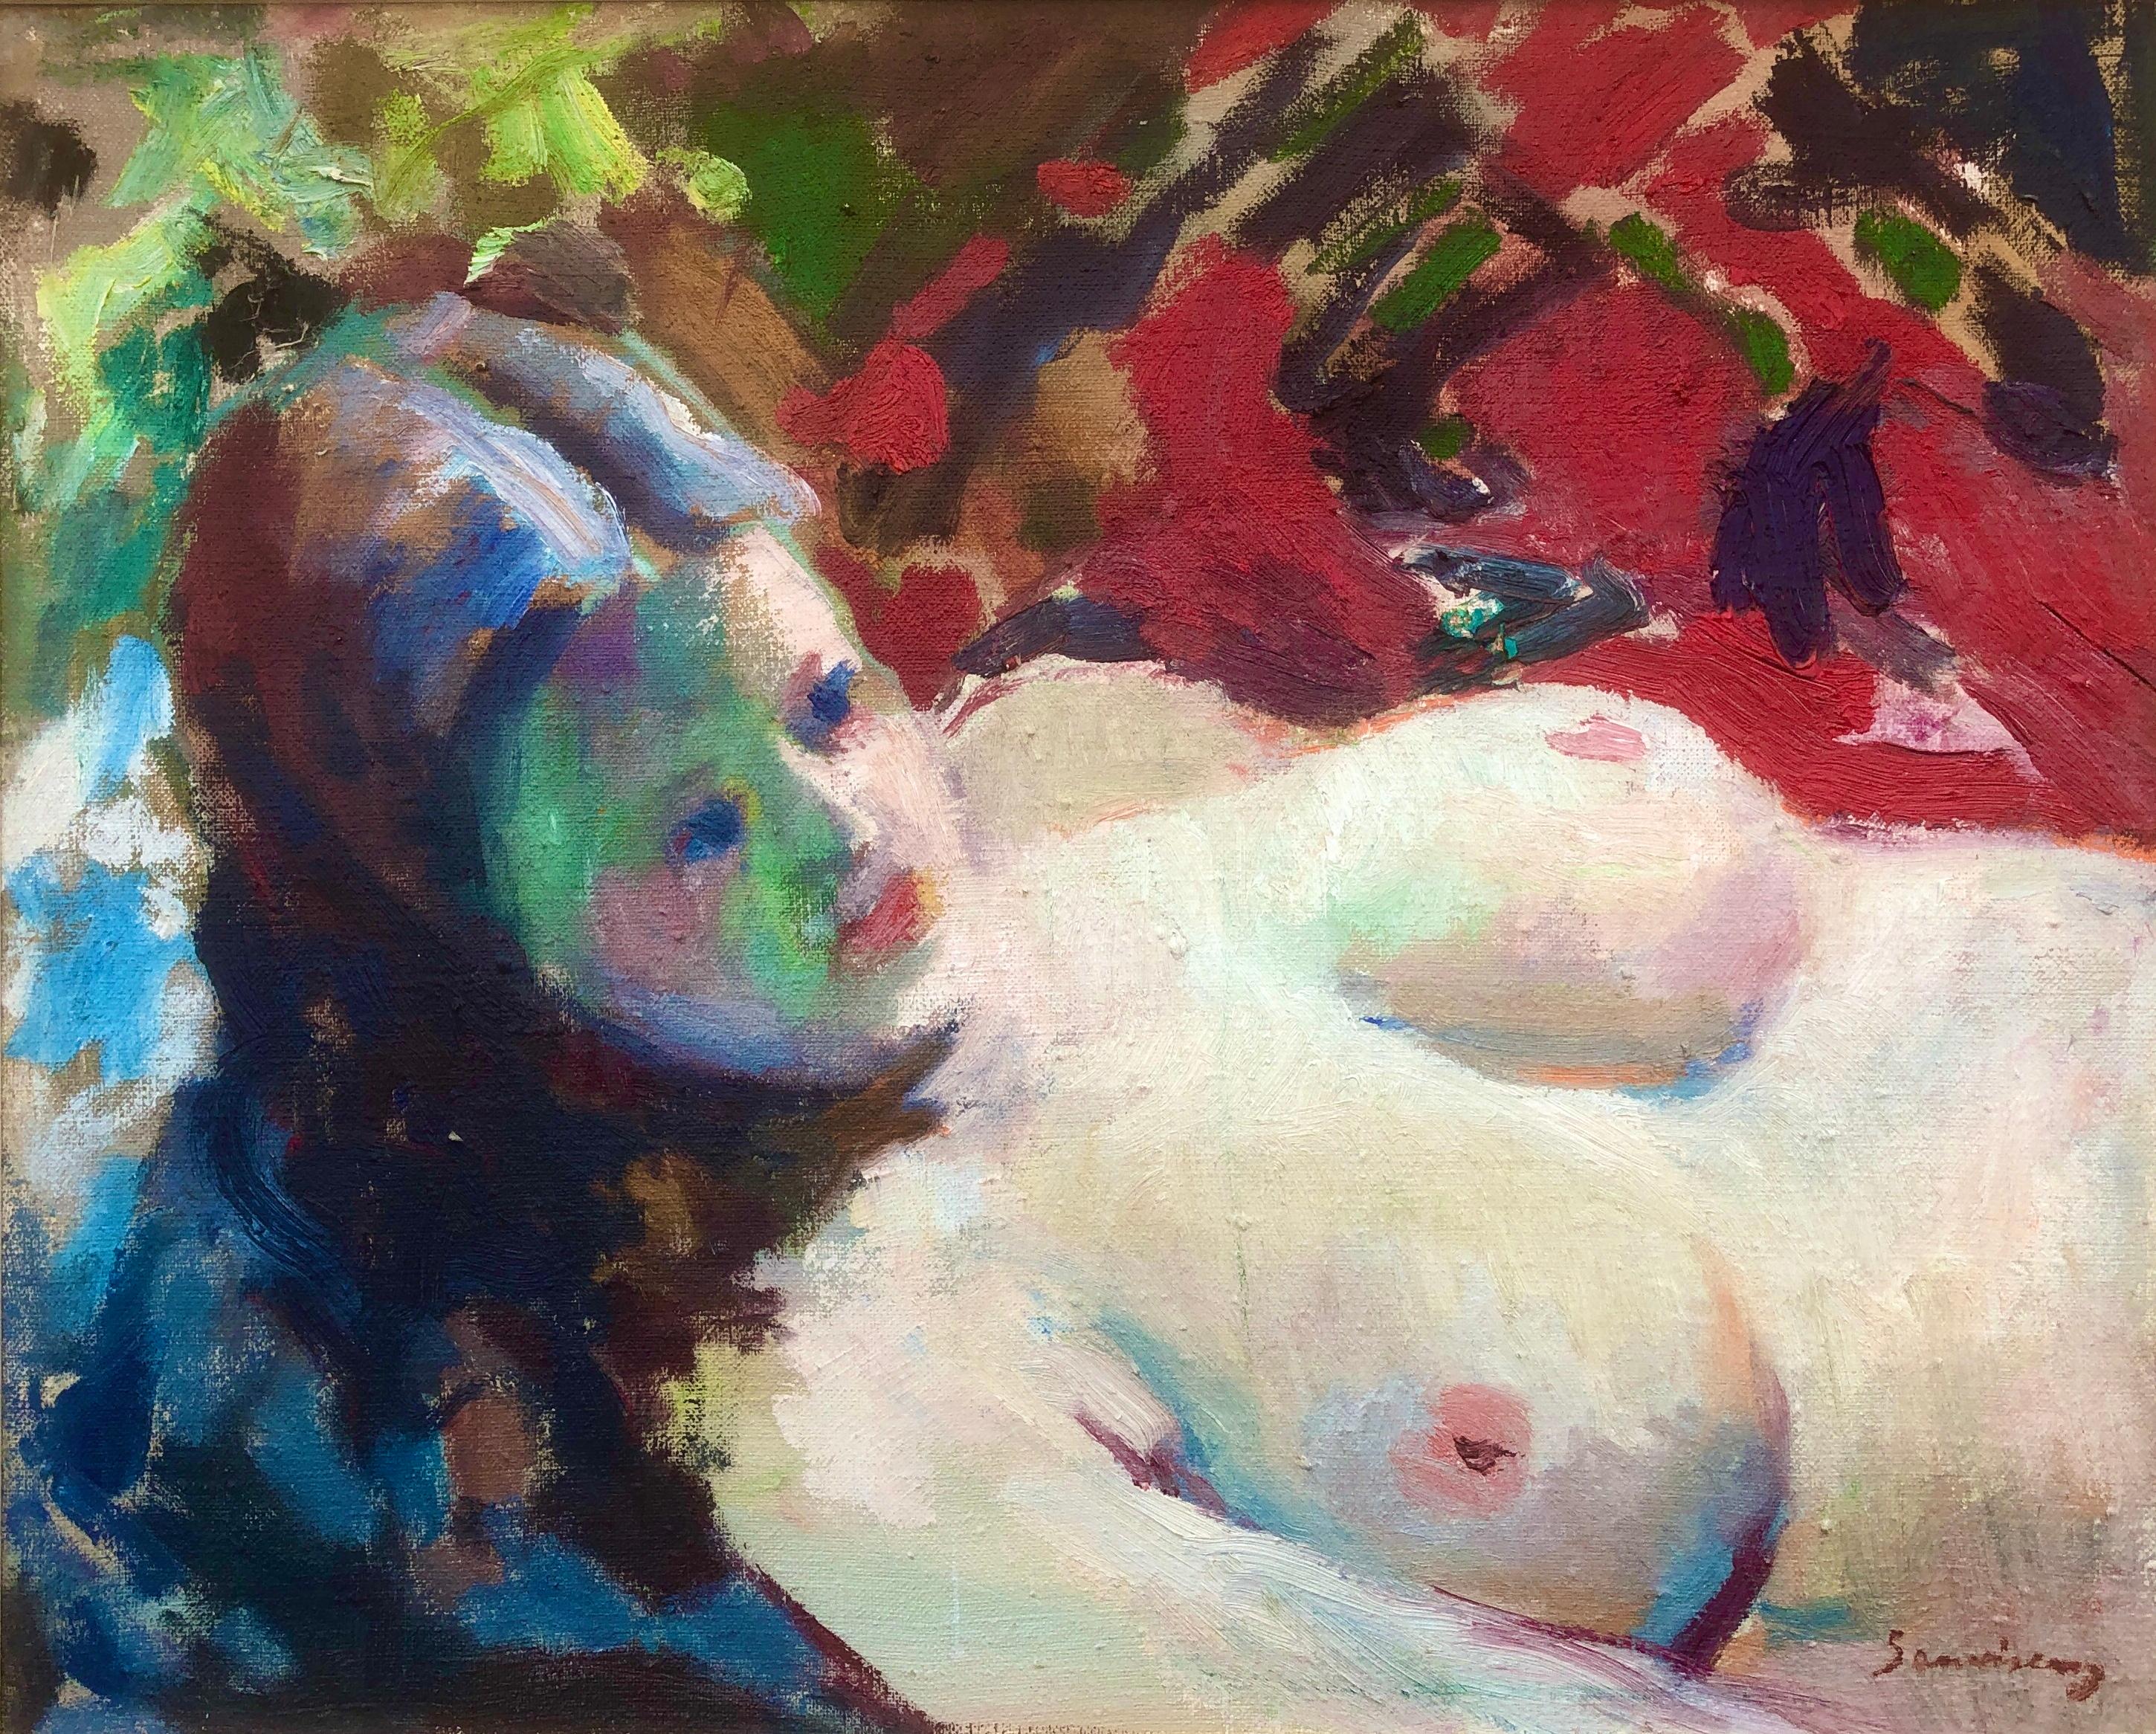 Ramon Sanvisens Marfull Nude Painting - Nude woman oil on canvas painting